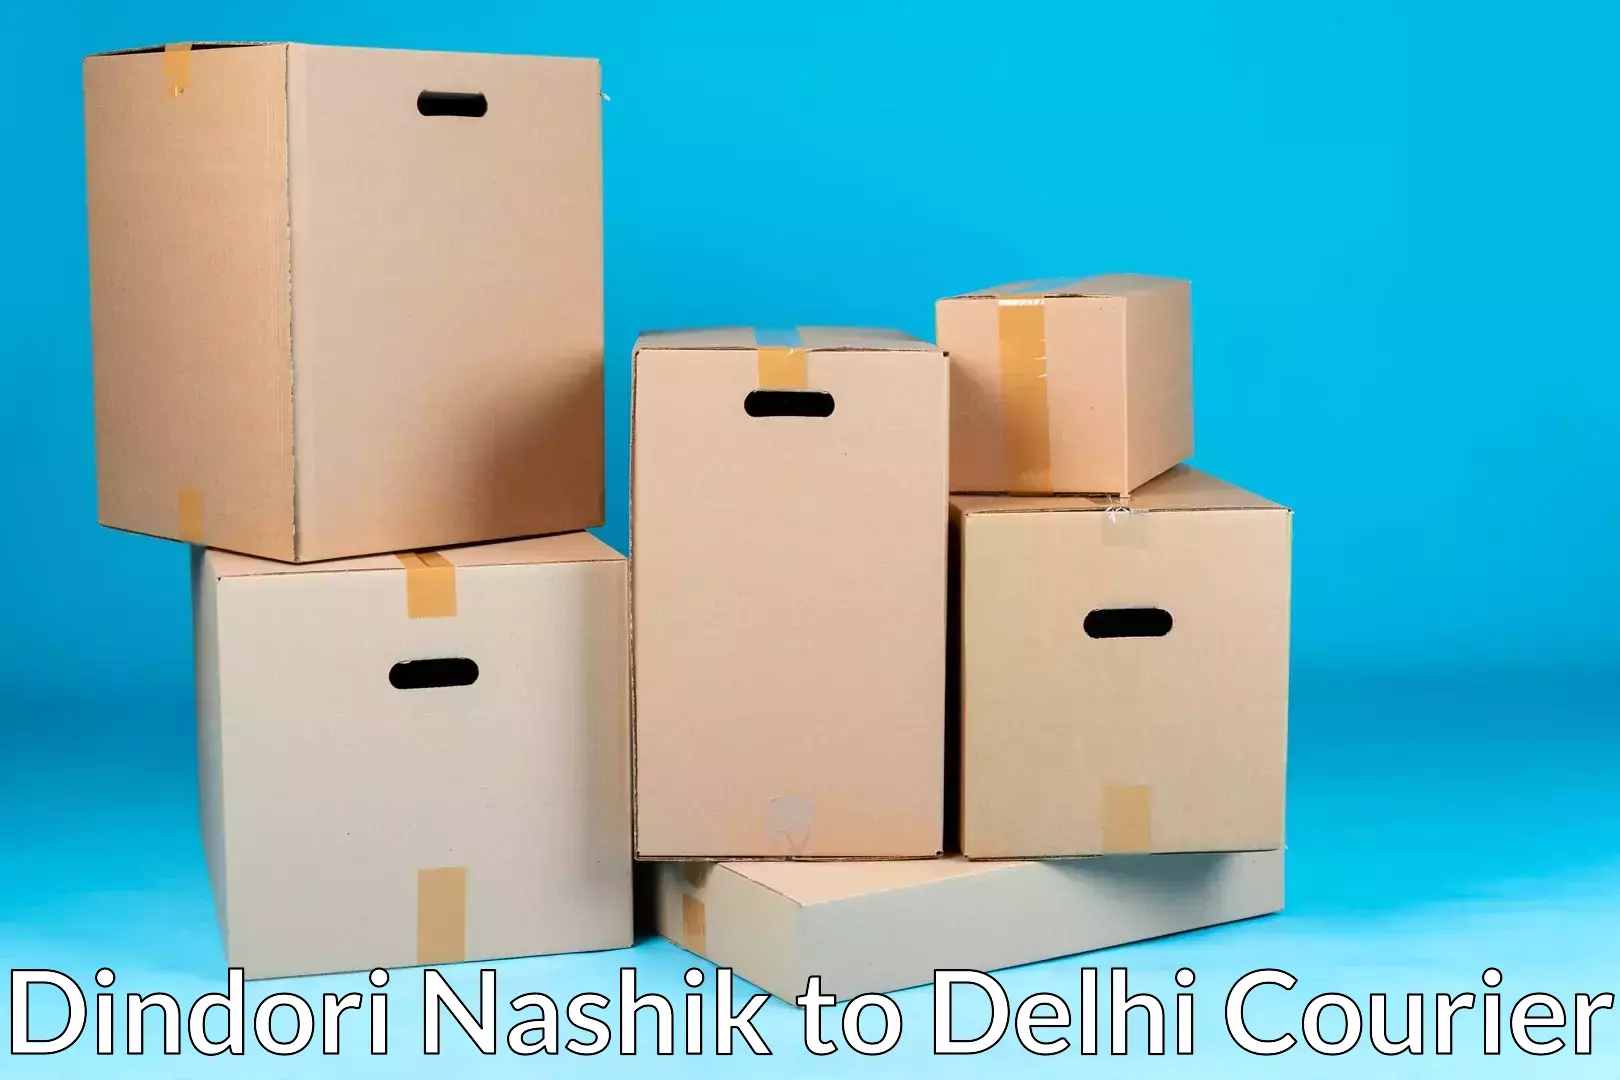 Door-to-door relocation services Dindori Nashik to Jawaharlal Nehru University New Delhi